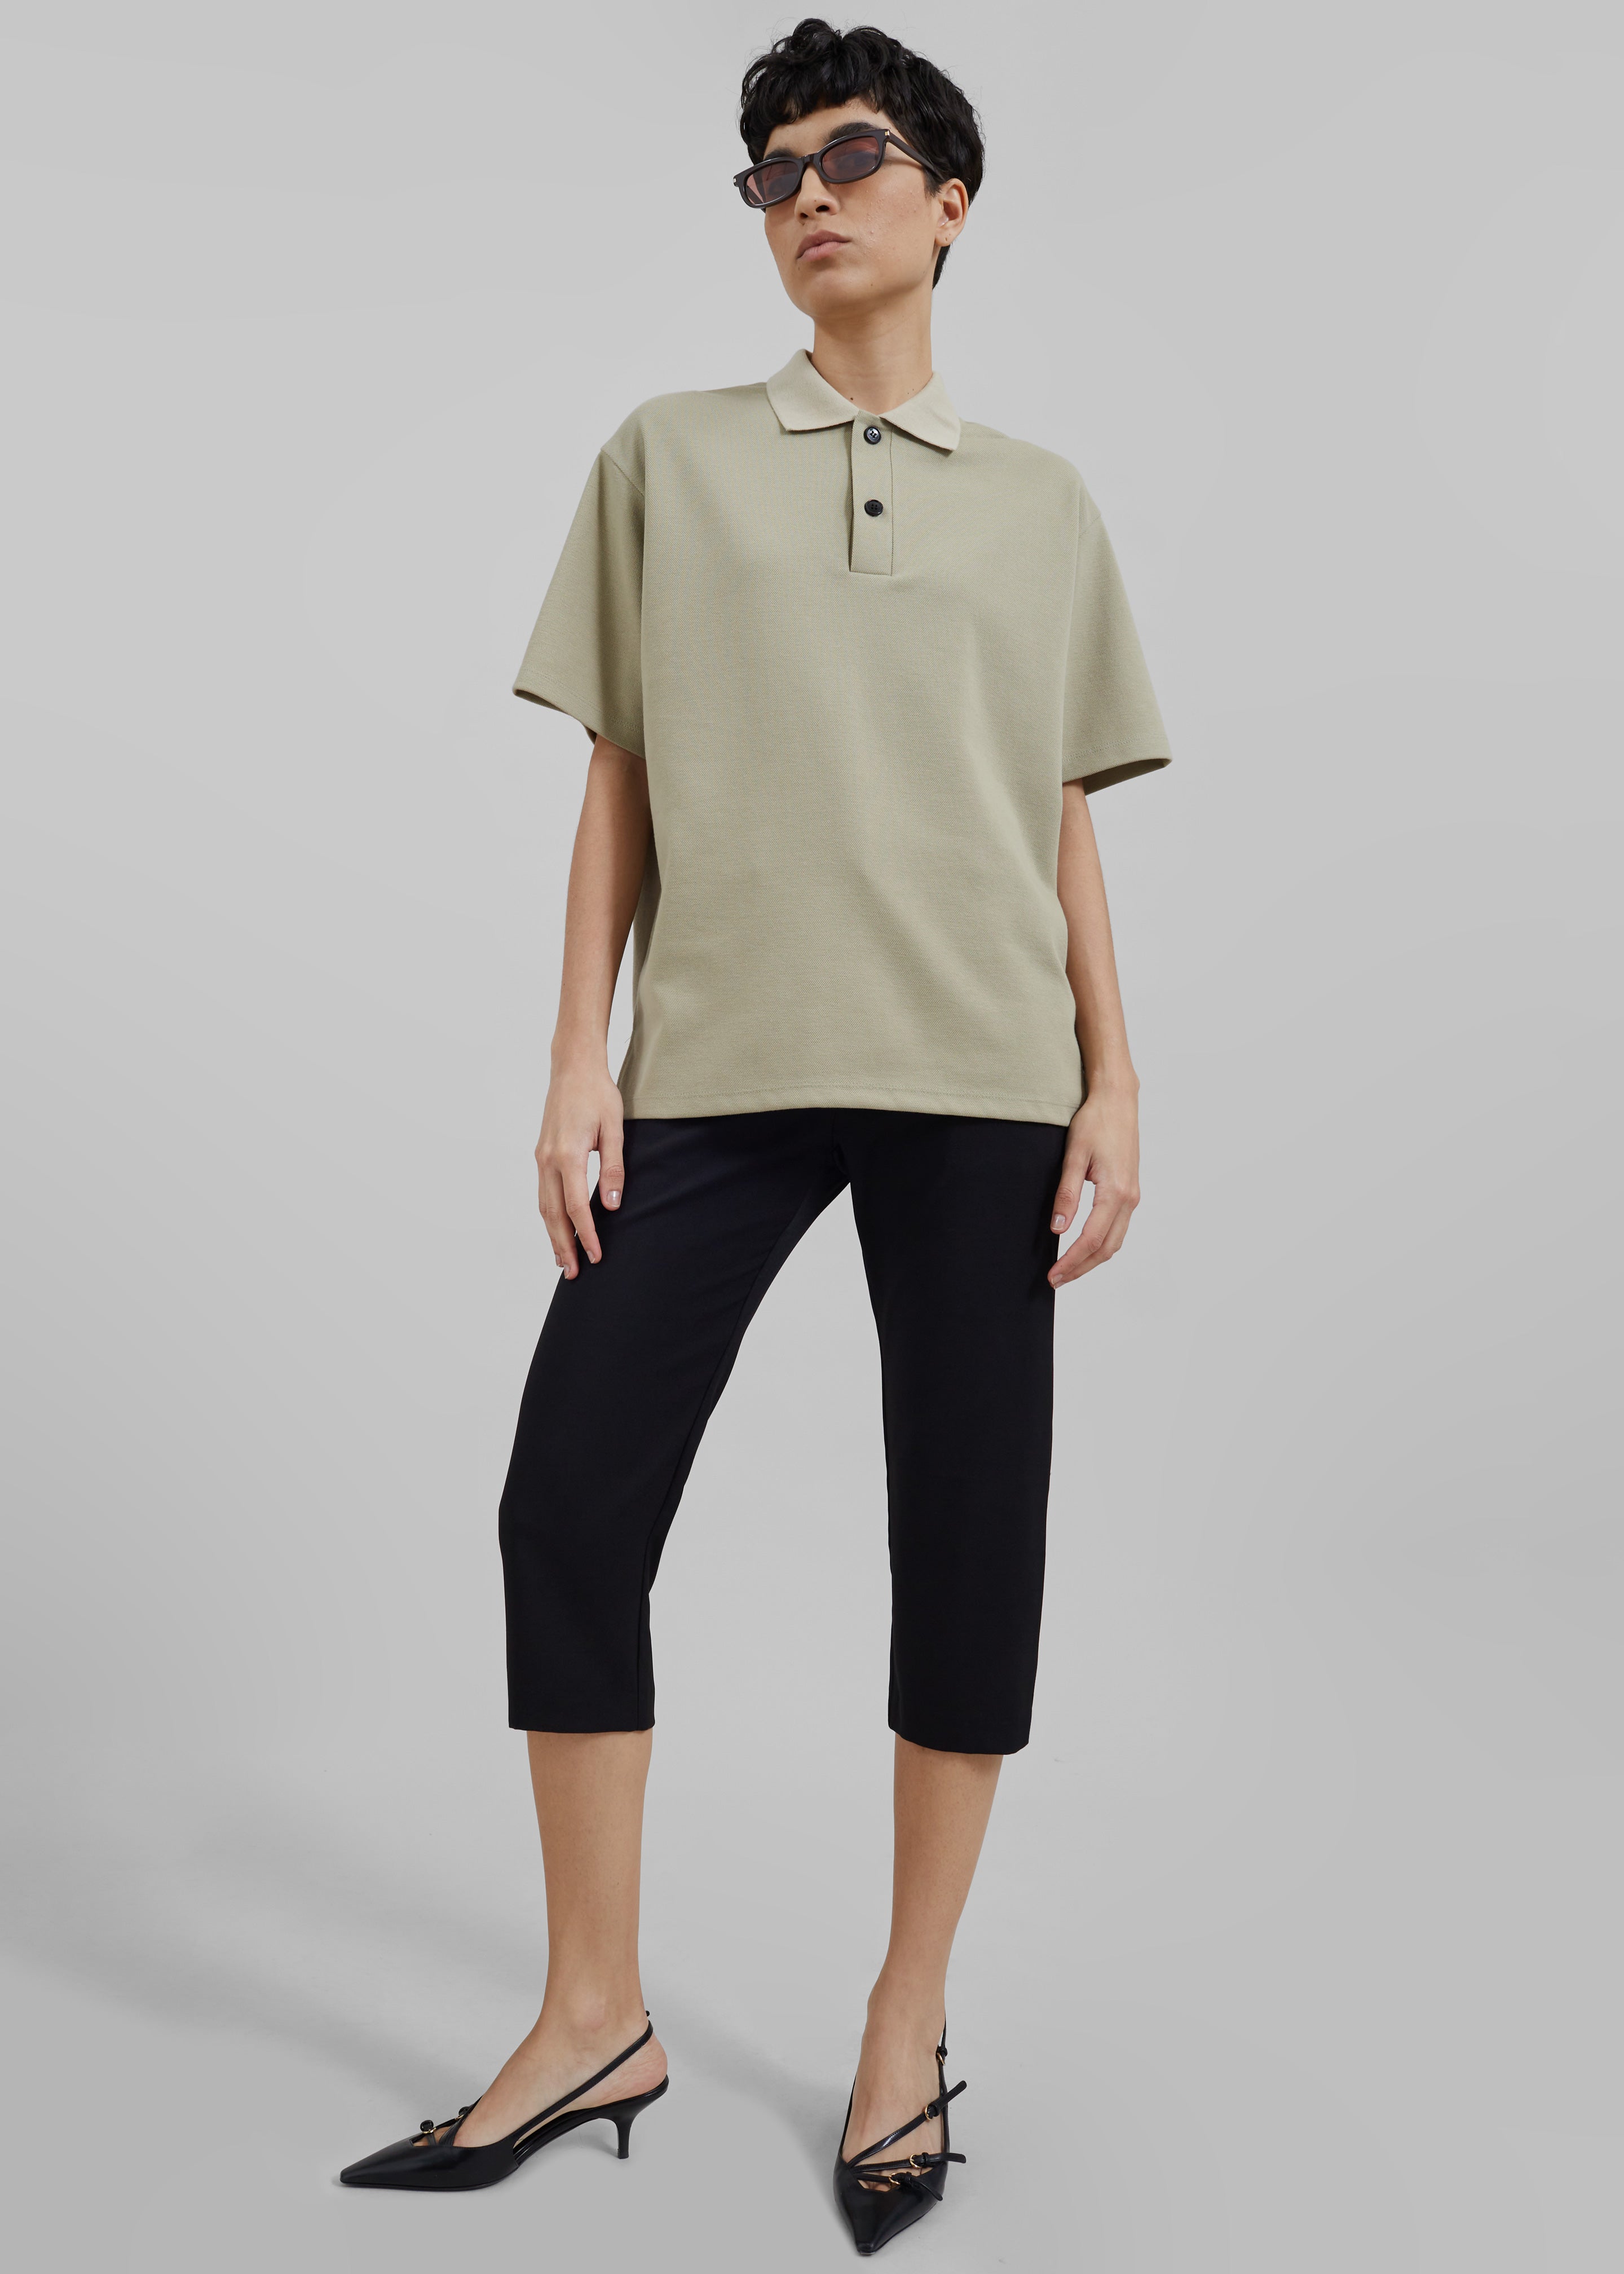 Dianne Polo Shirt - Khaki - 7